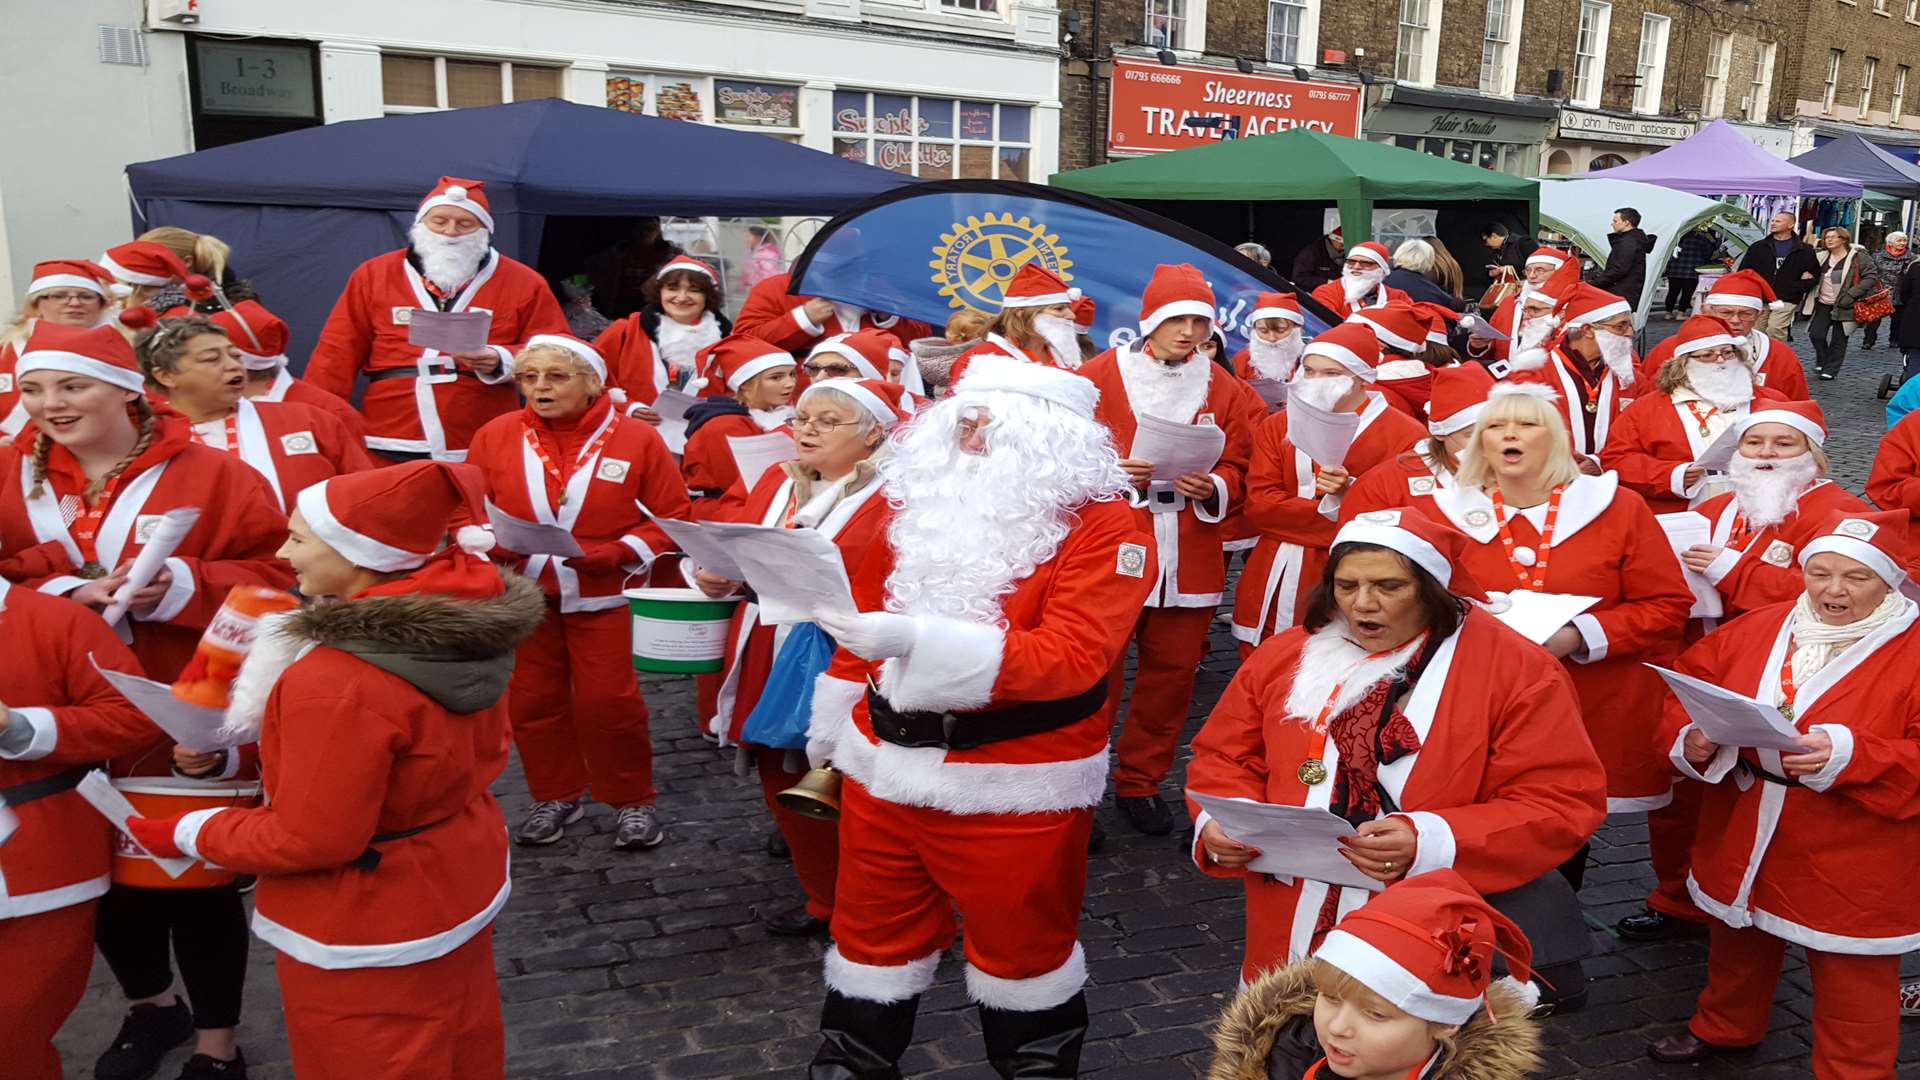 The Rotary Club Santas sang carols around the clocktower